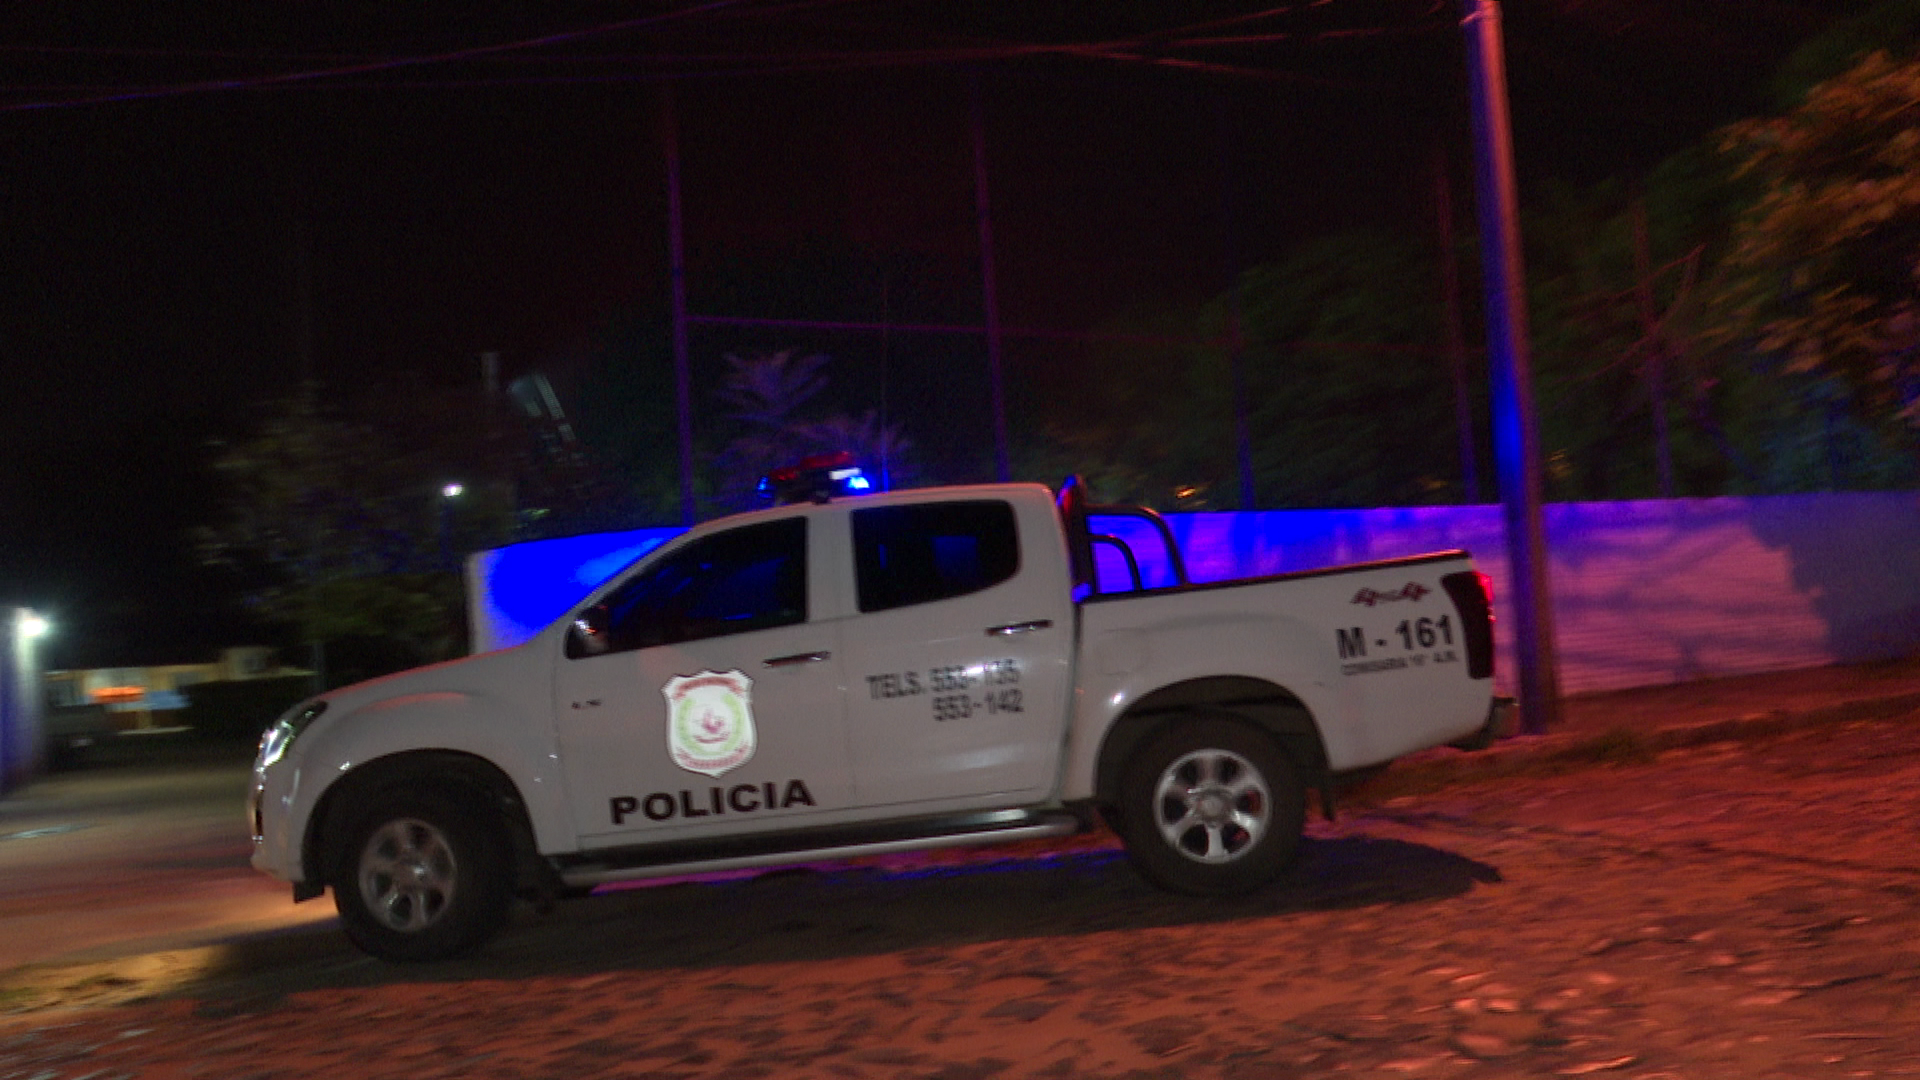 En el barrio San Pablo de Asunción, un agente policial fue despojado de su arma durante un procedimiento de detención. Foto: captura de pantalla.